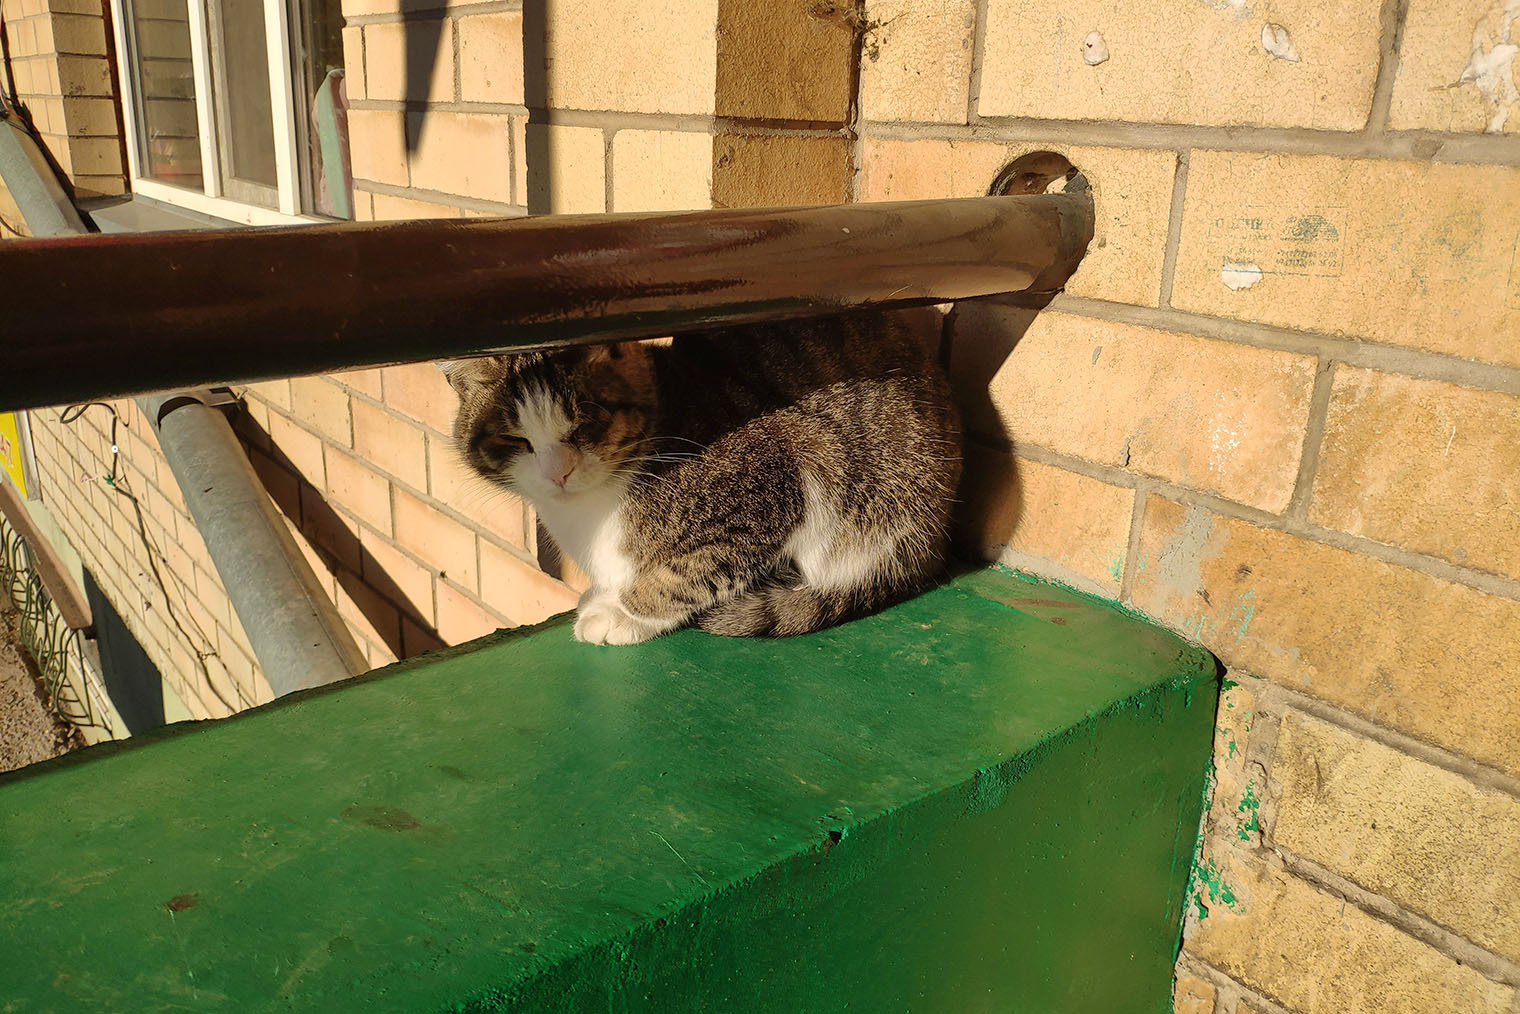 Еще там много котов. Этот охранял подъезд дома в Астане, где мы жили. Иногда он лежал на большой подушке